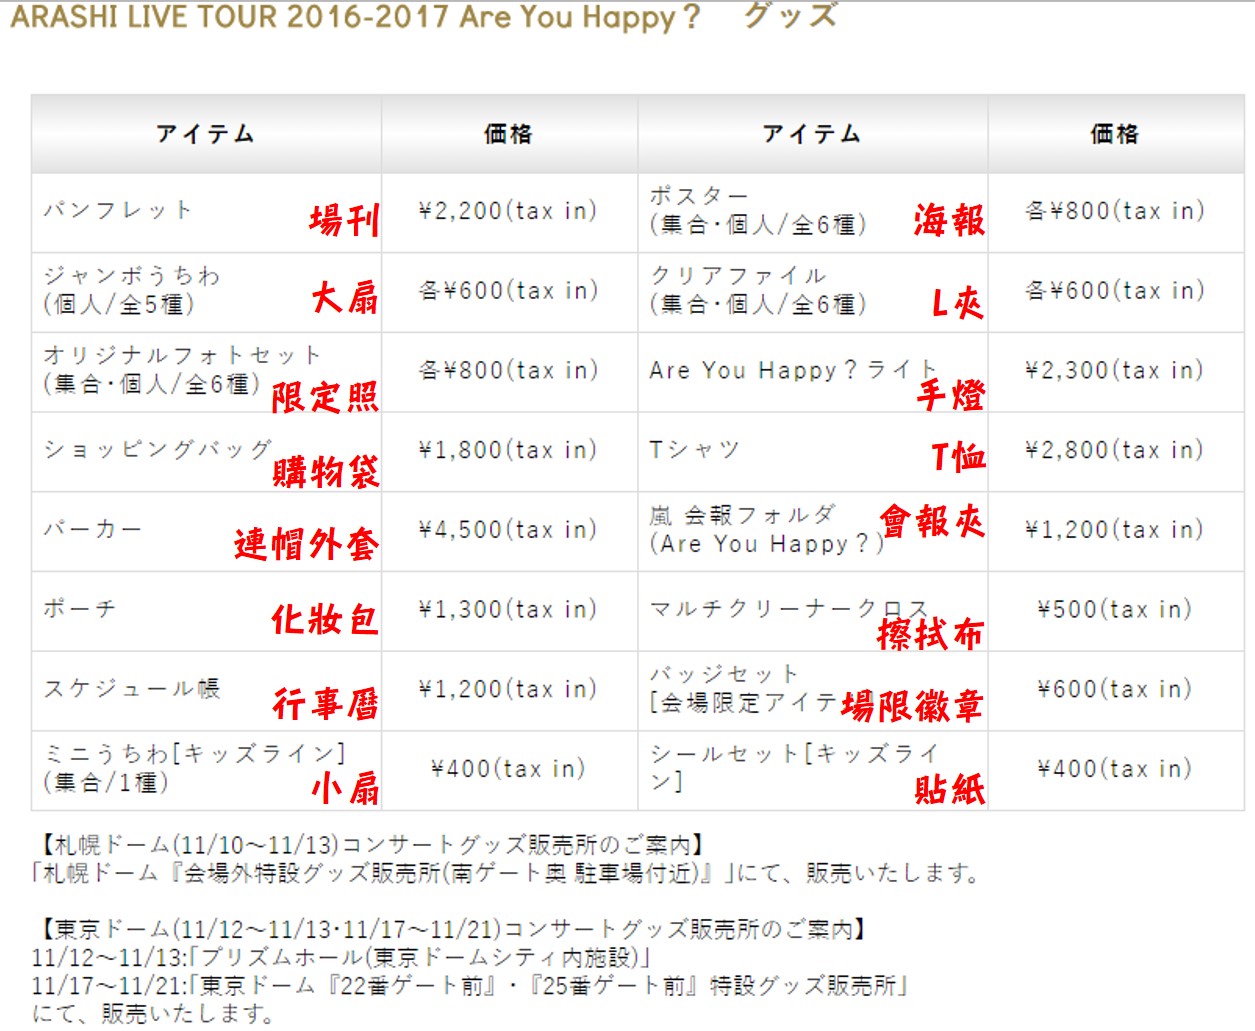 周邊 Arashi Live Tour 16 17 Are You Happy グッズ詳細